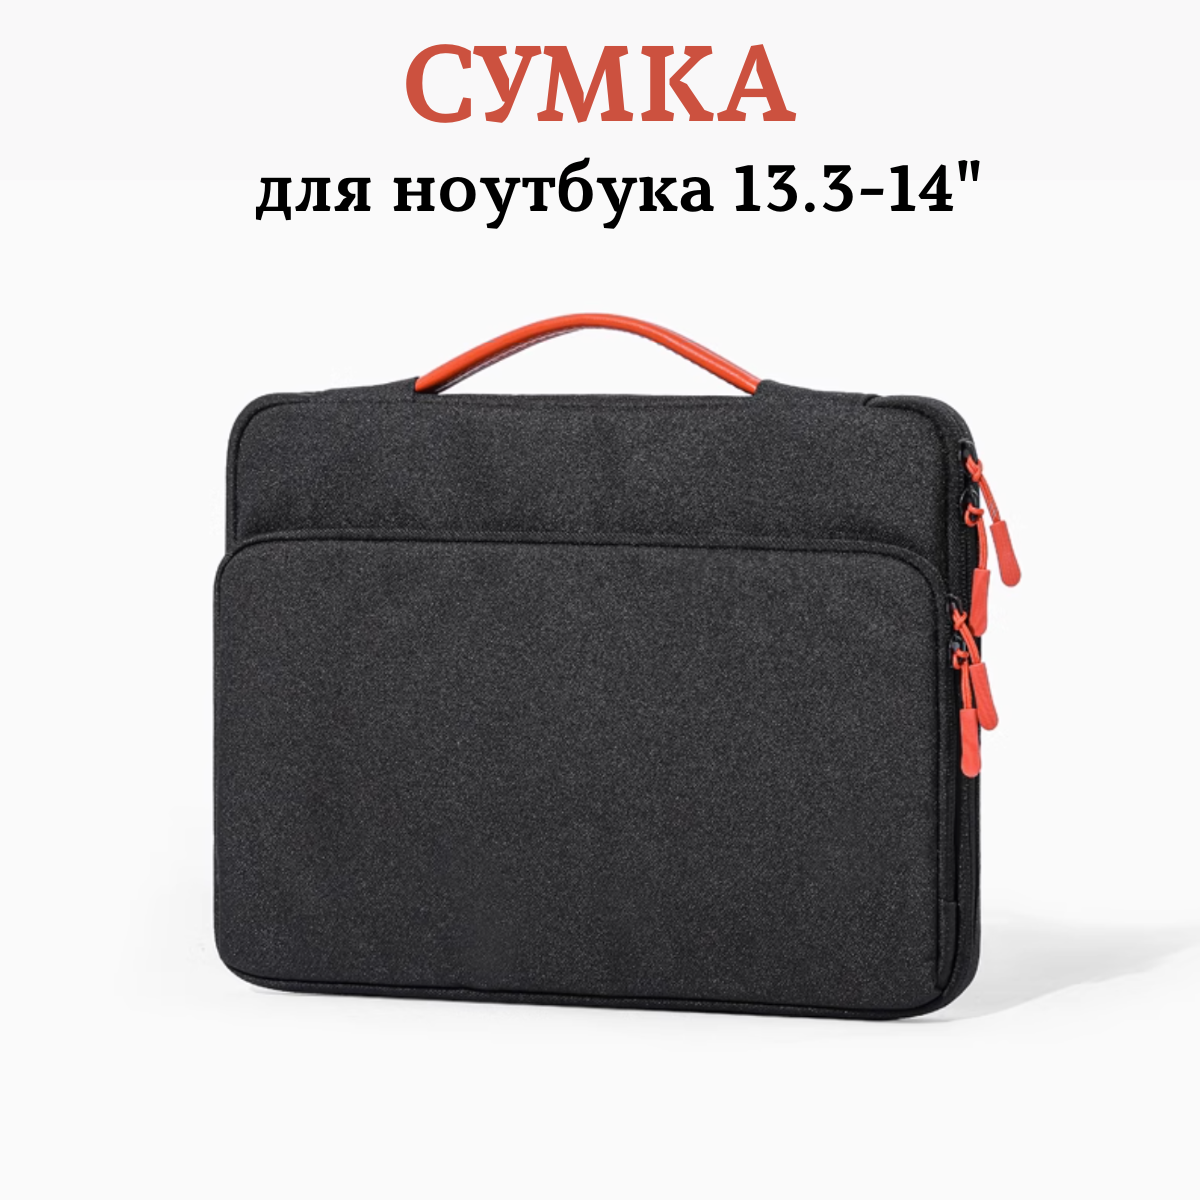 Сумка - портфель для ноутбука 13-14 macbook, Amabaris водонепроницаемая, ударопрочная, стильная, черная, мужская, женская